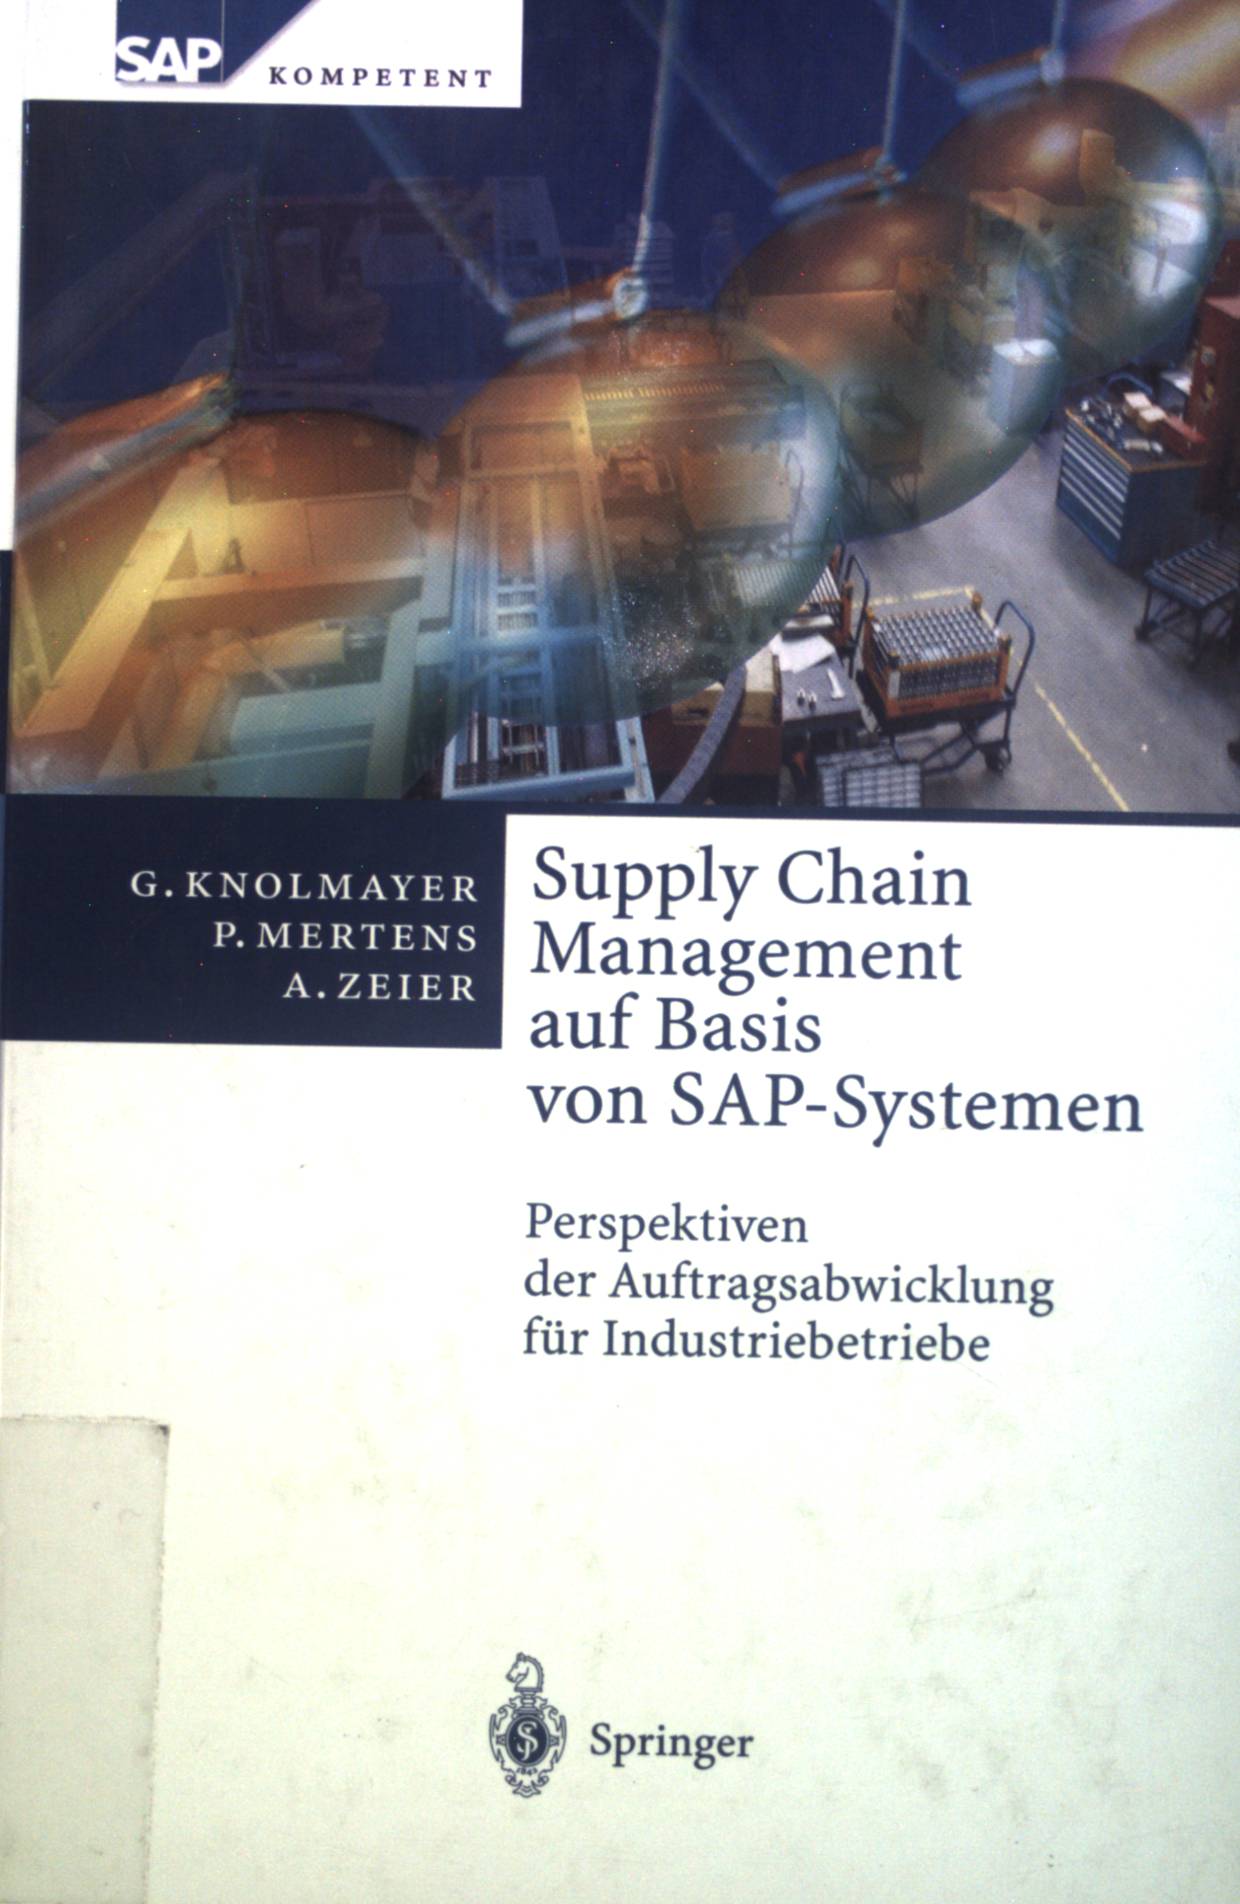 Supply Chain Management auf Basis von SAP-Systemen: Perspektiven der Auftragsabwicklung für Industriebetriebe (SAP Kompetent).  Auflage: 2000 - Knolmayer, Gerhard, Peter Mertens und Alexander Zeier